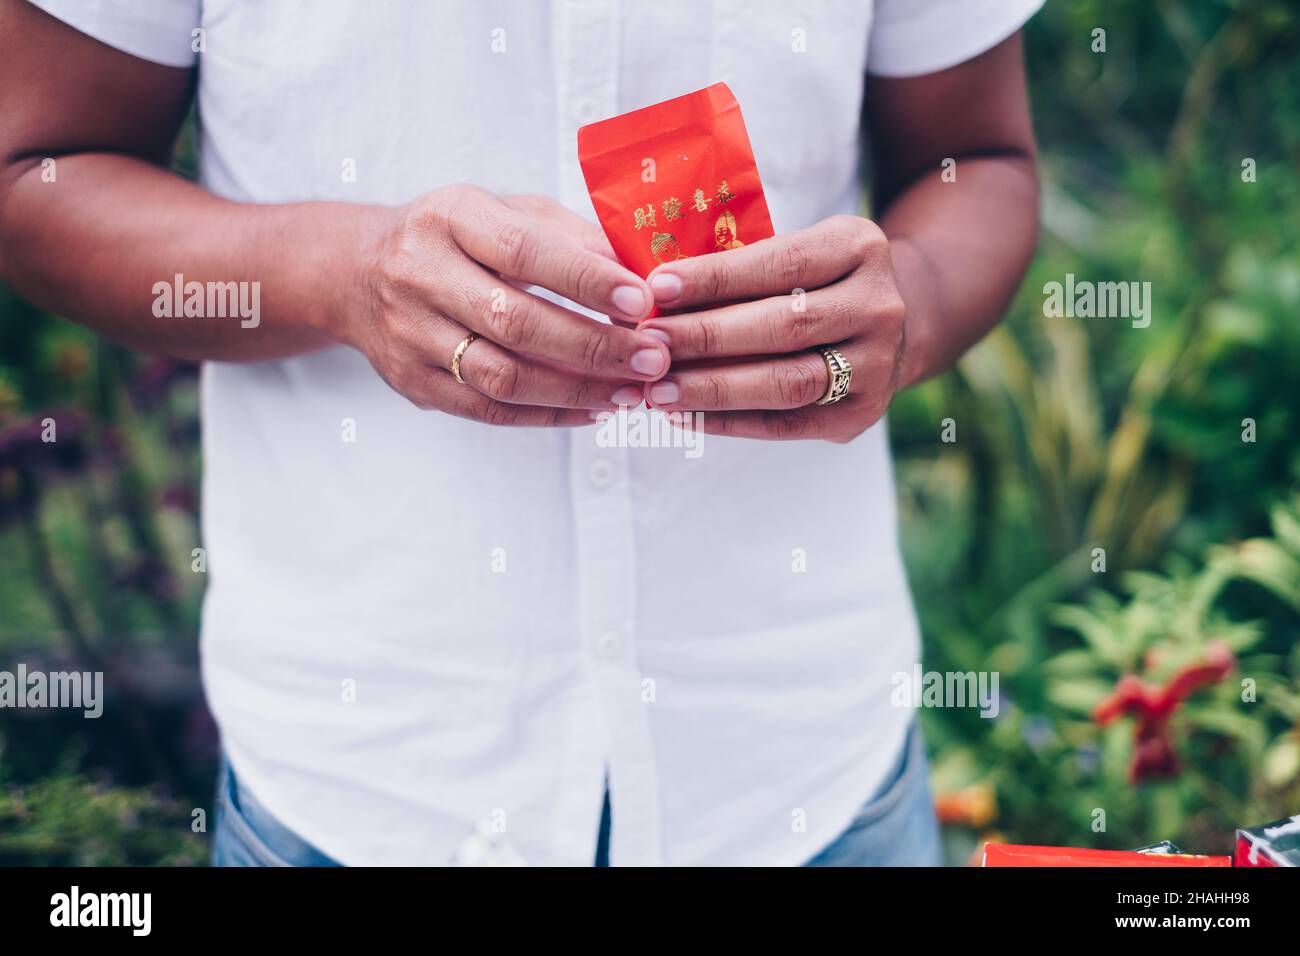 Mains de l'homme tenant une enveloppe rouge ouverte ou un paquet rouge appelé Ang Pao ou Ang Pow, également Hongbao ou Hungbao en mandarin et Lai See en cantonais. Banque D'Images